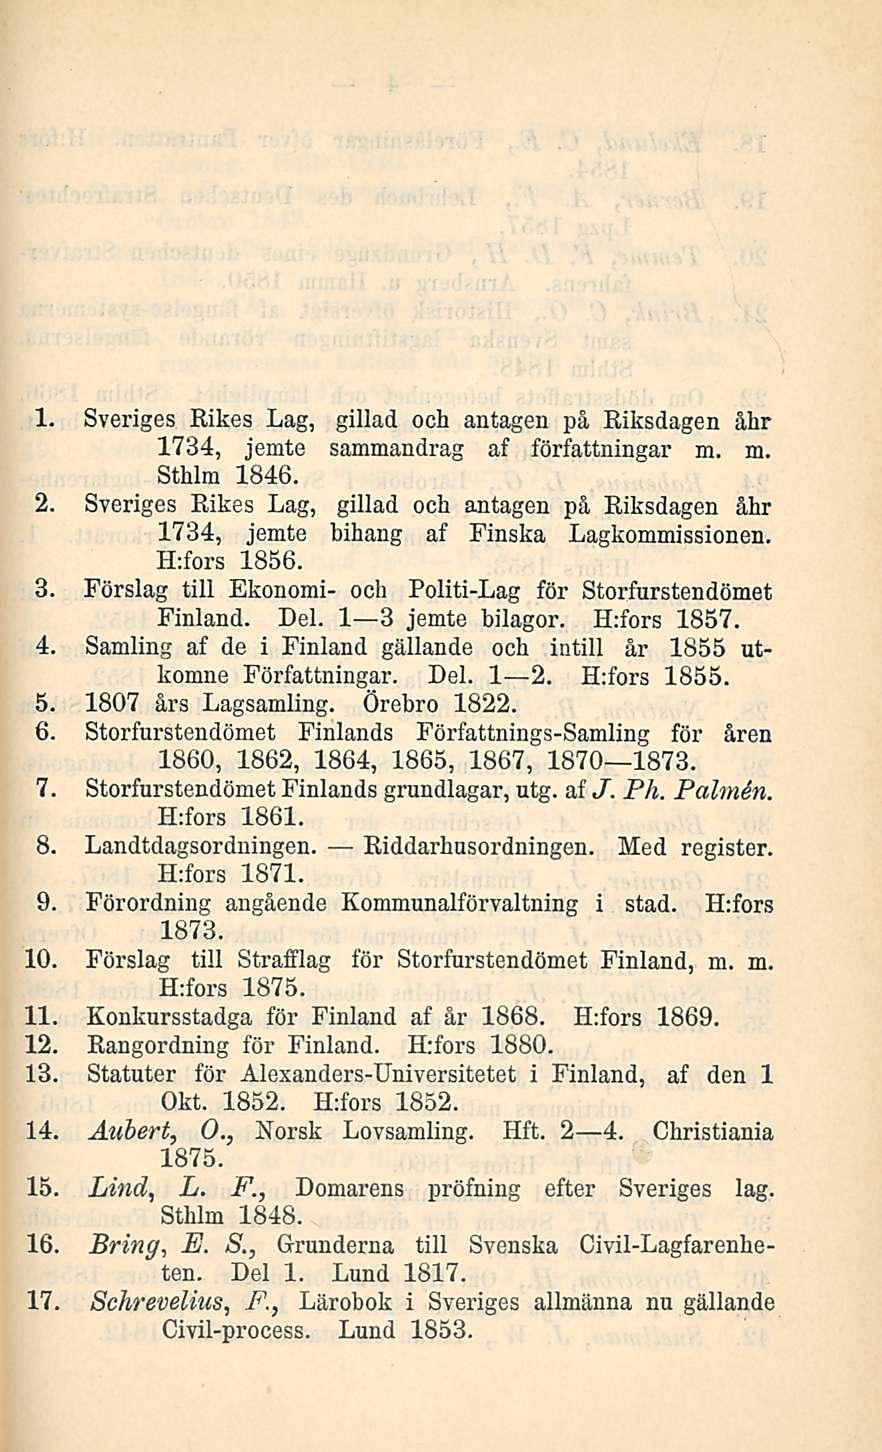 1. Sveriges Rikes Lag, gillad och antagen på Riksdagen åkr 1734, jemte sammandrag af författningar m. m. Sthlm 1846. 2.